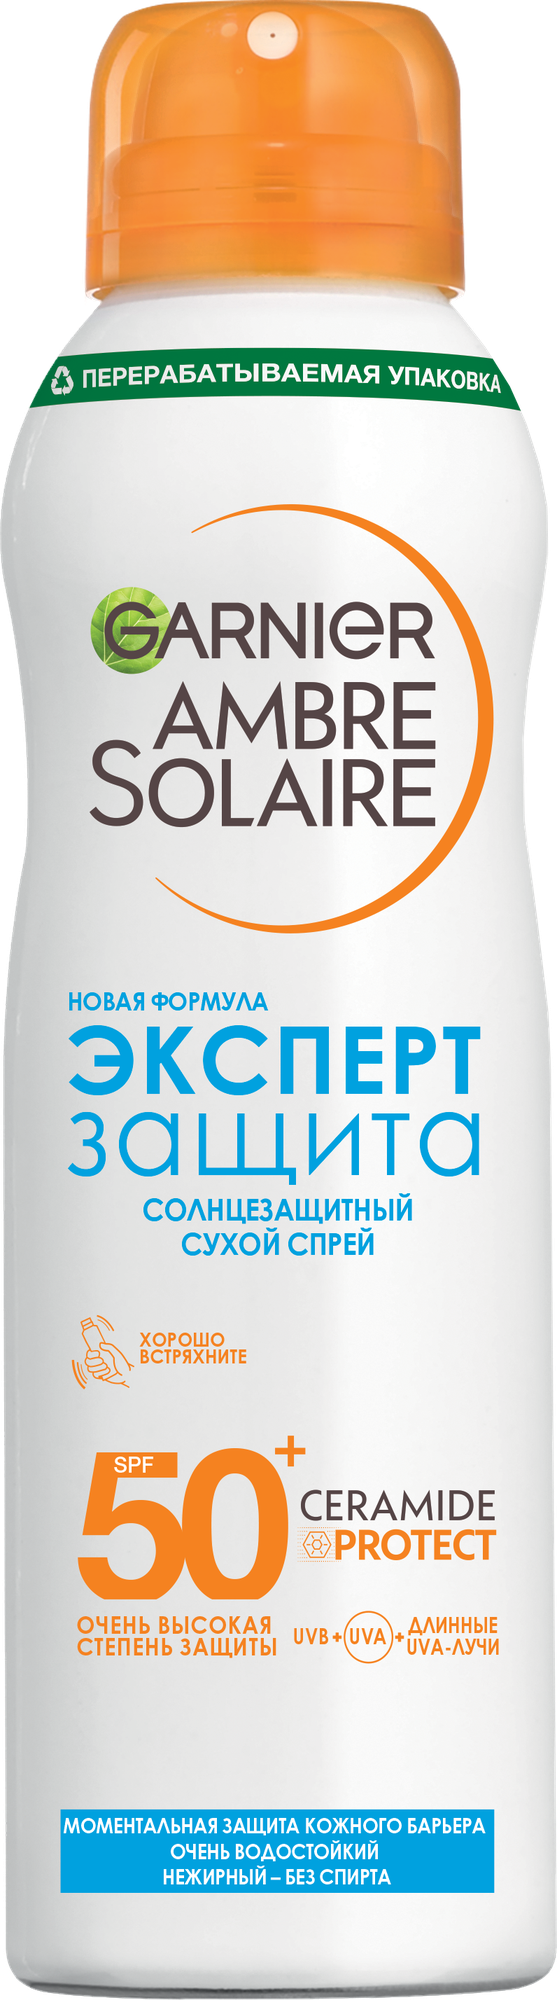 Солнцезащитный спрей Garnier сухой Ambre Solaire гипоаллергенный SPF50 150мл